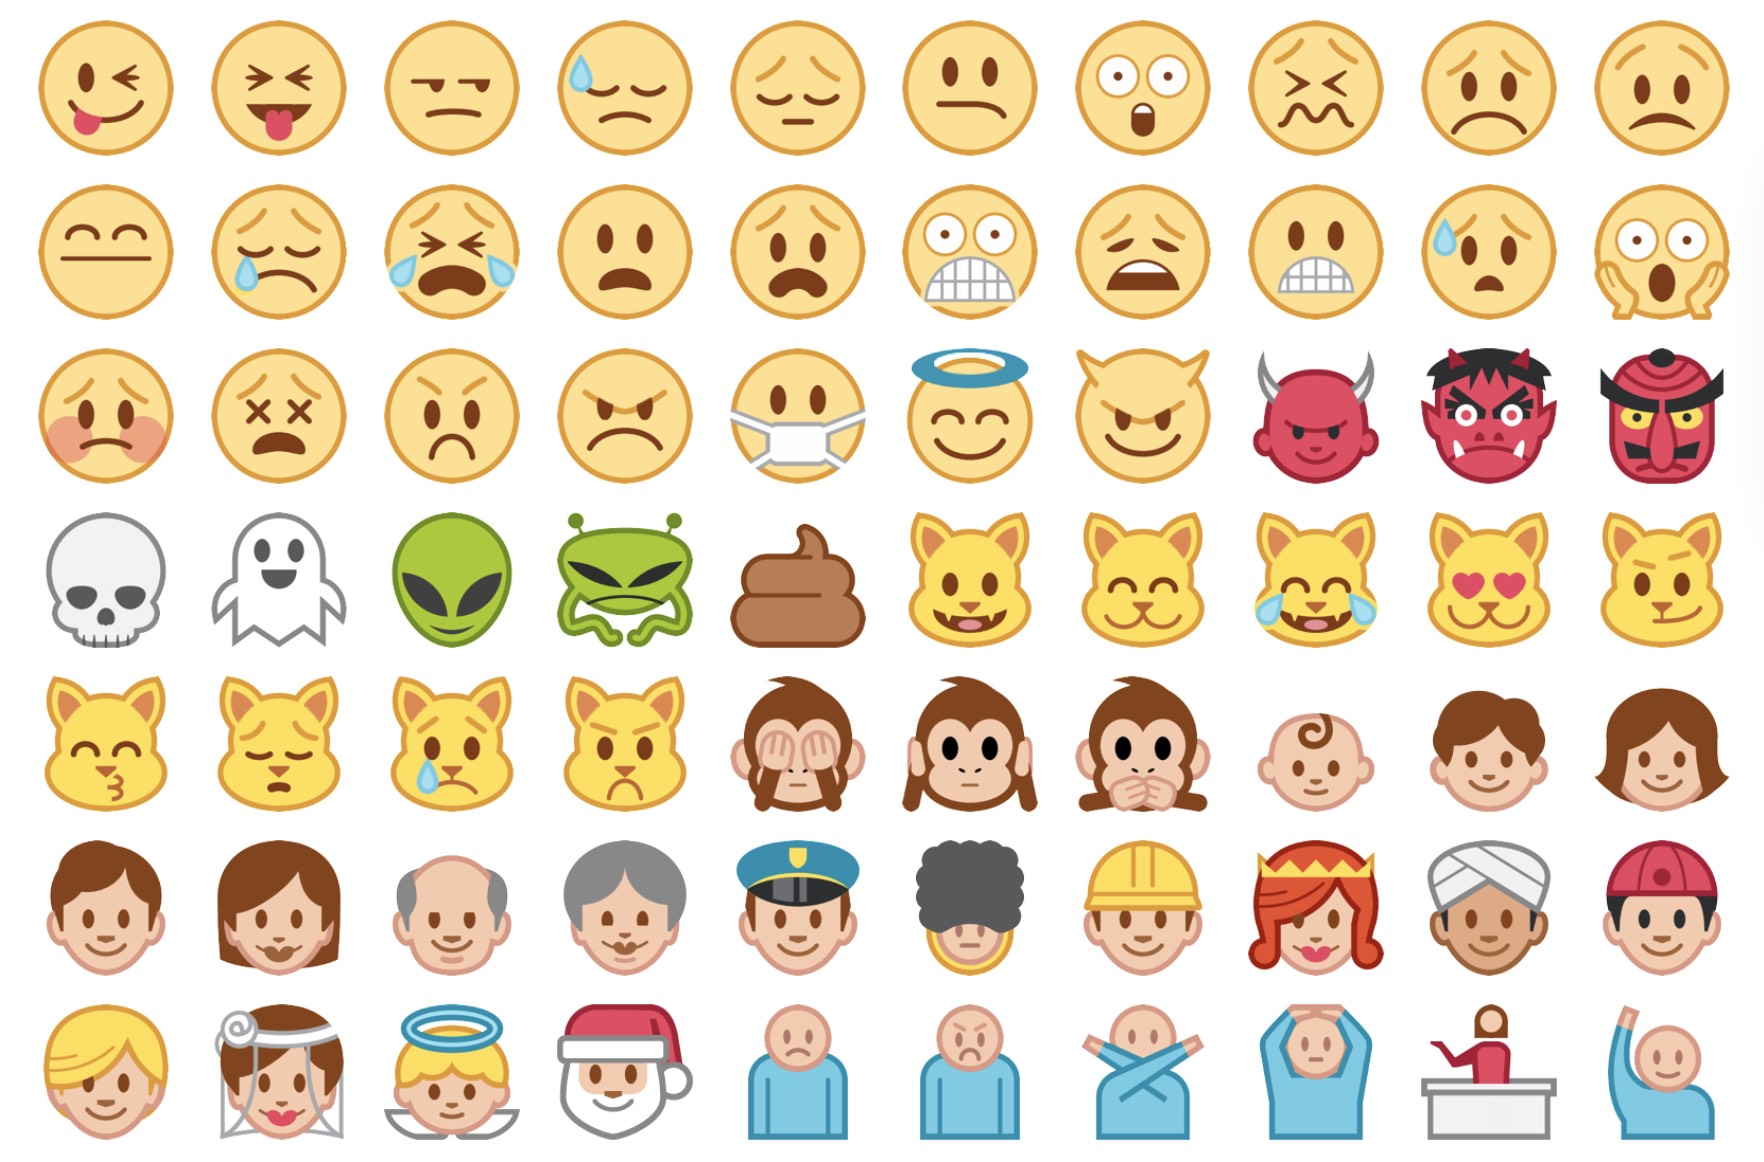 htc-emoji-2015-emojipedia